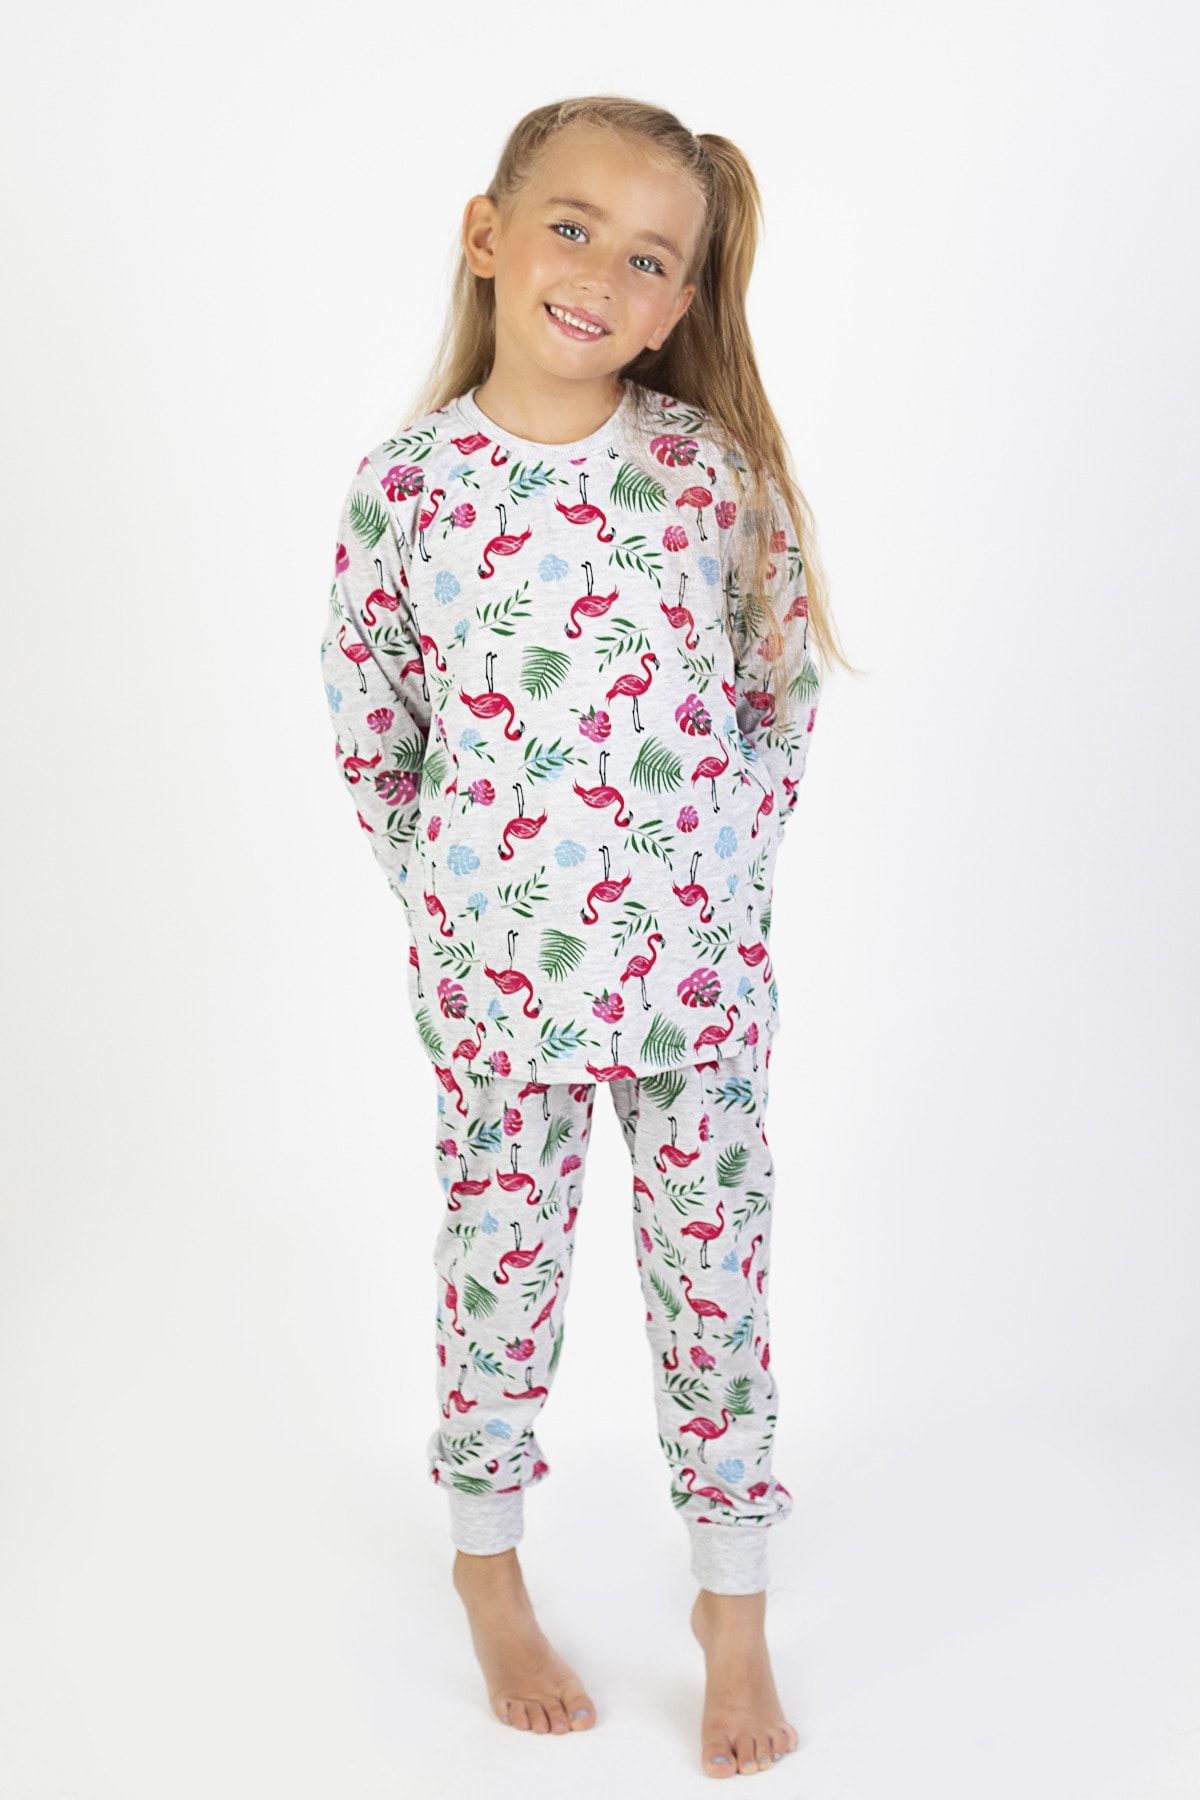 HARİKA KİDS Kız Çocuk Baskılı İnce Basic Pijama Takımı